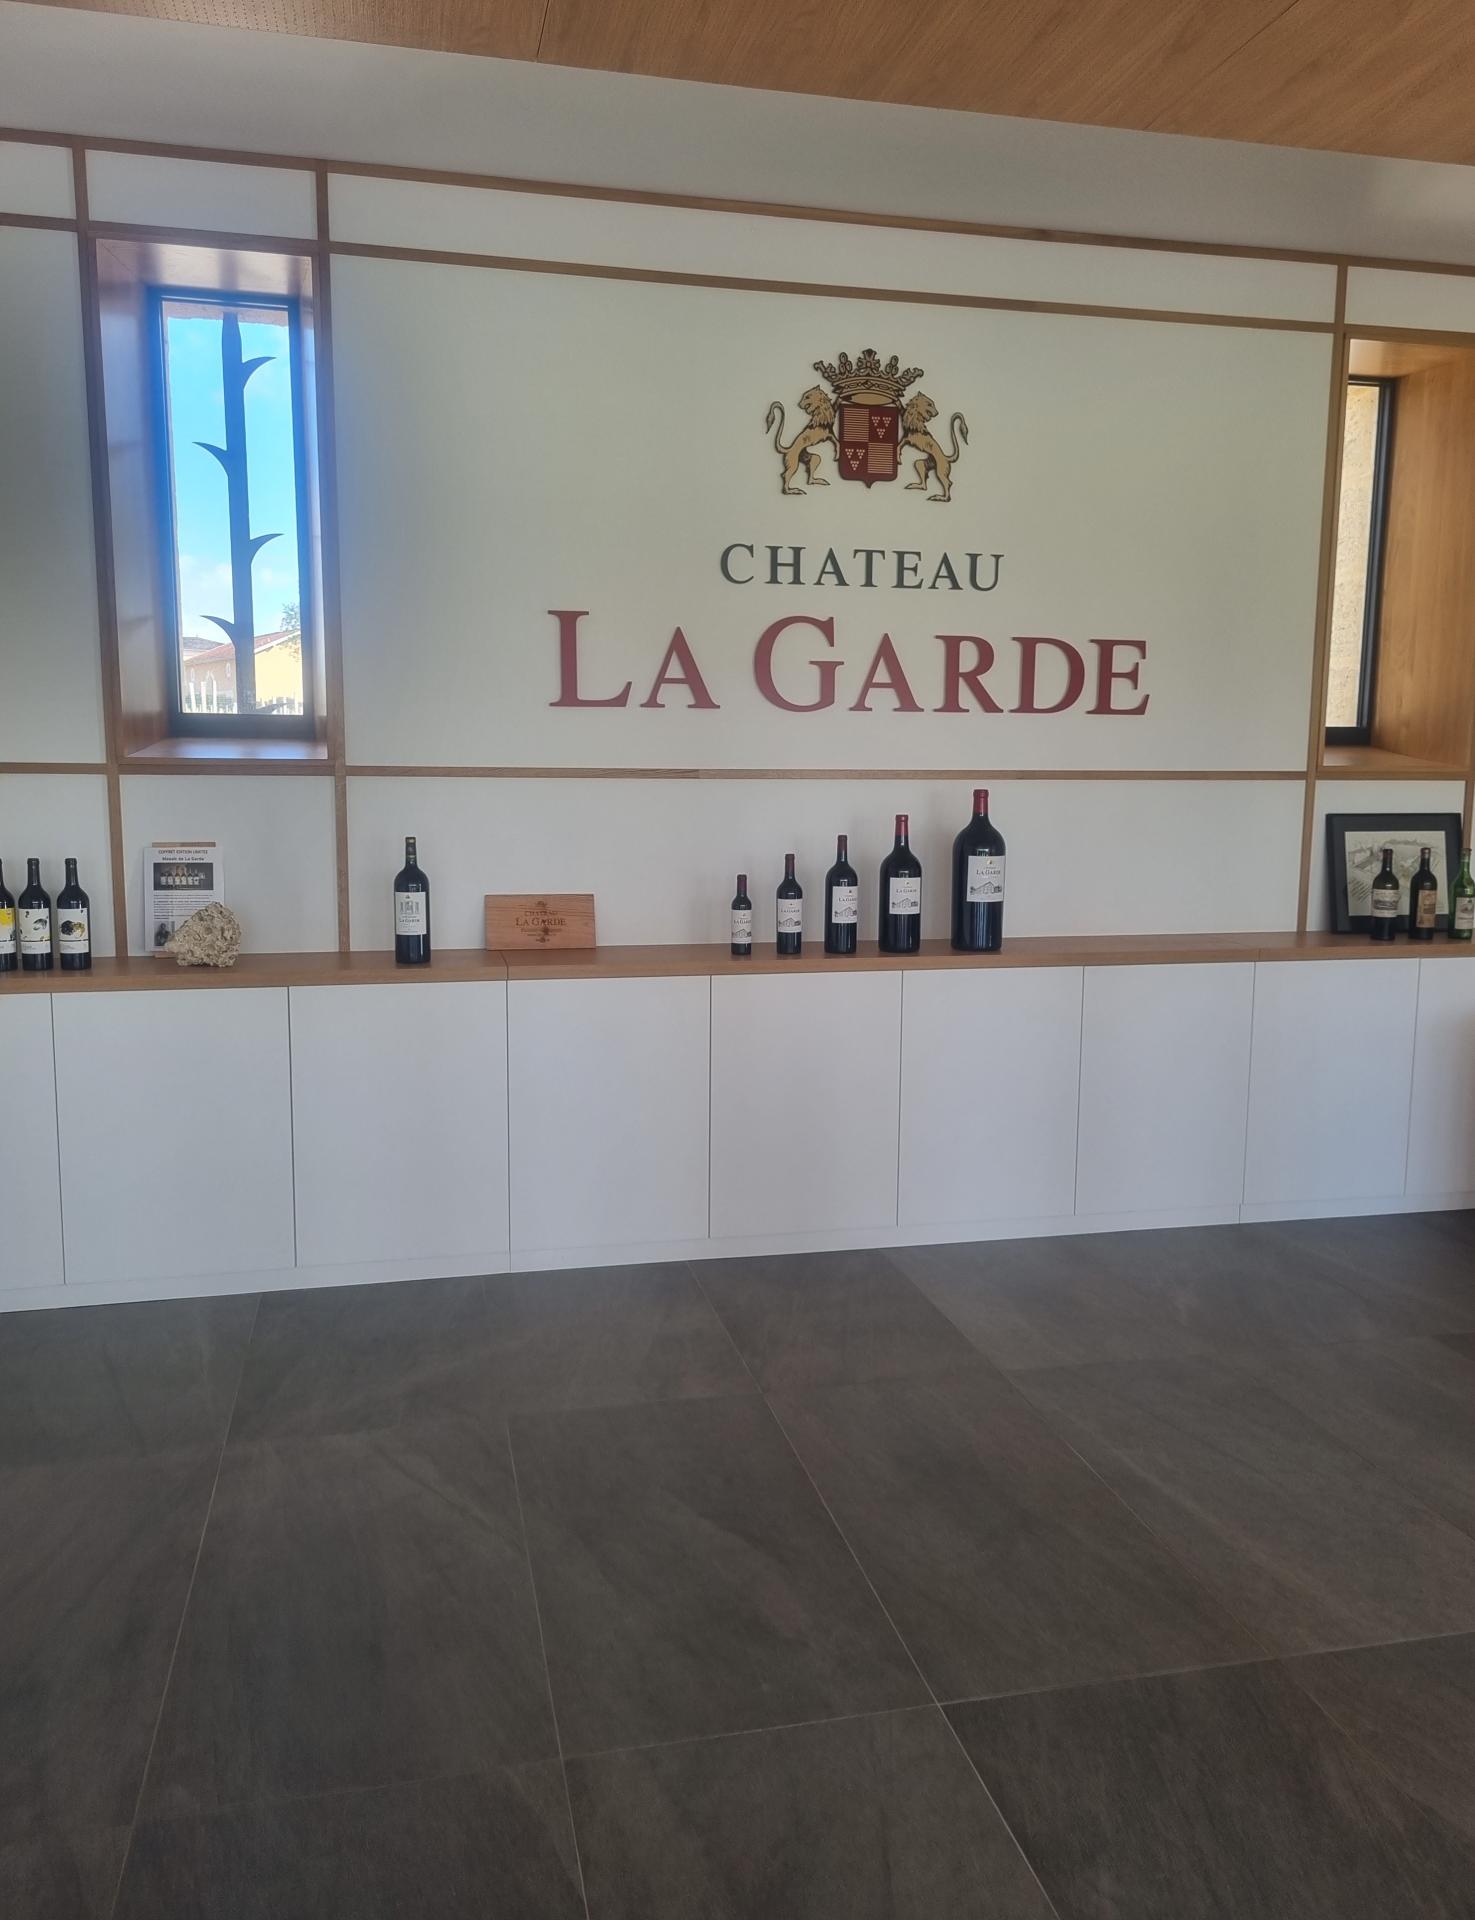 Château La Garde